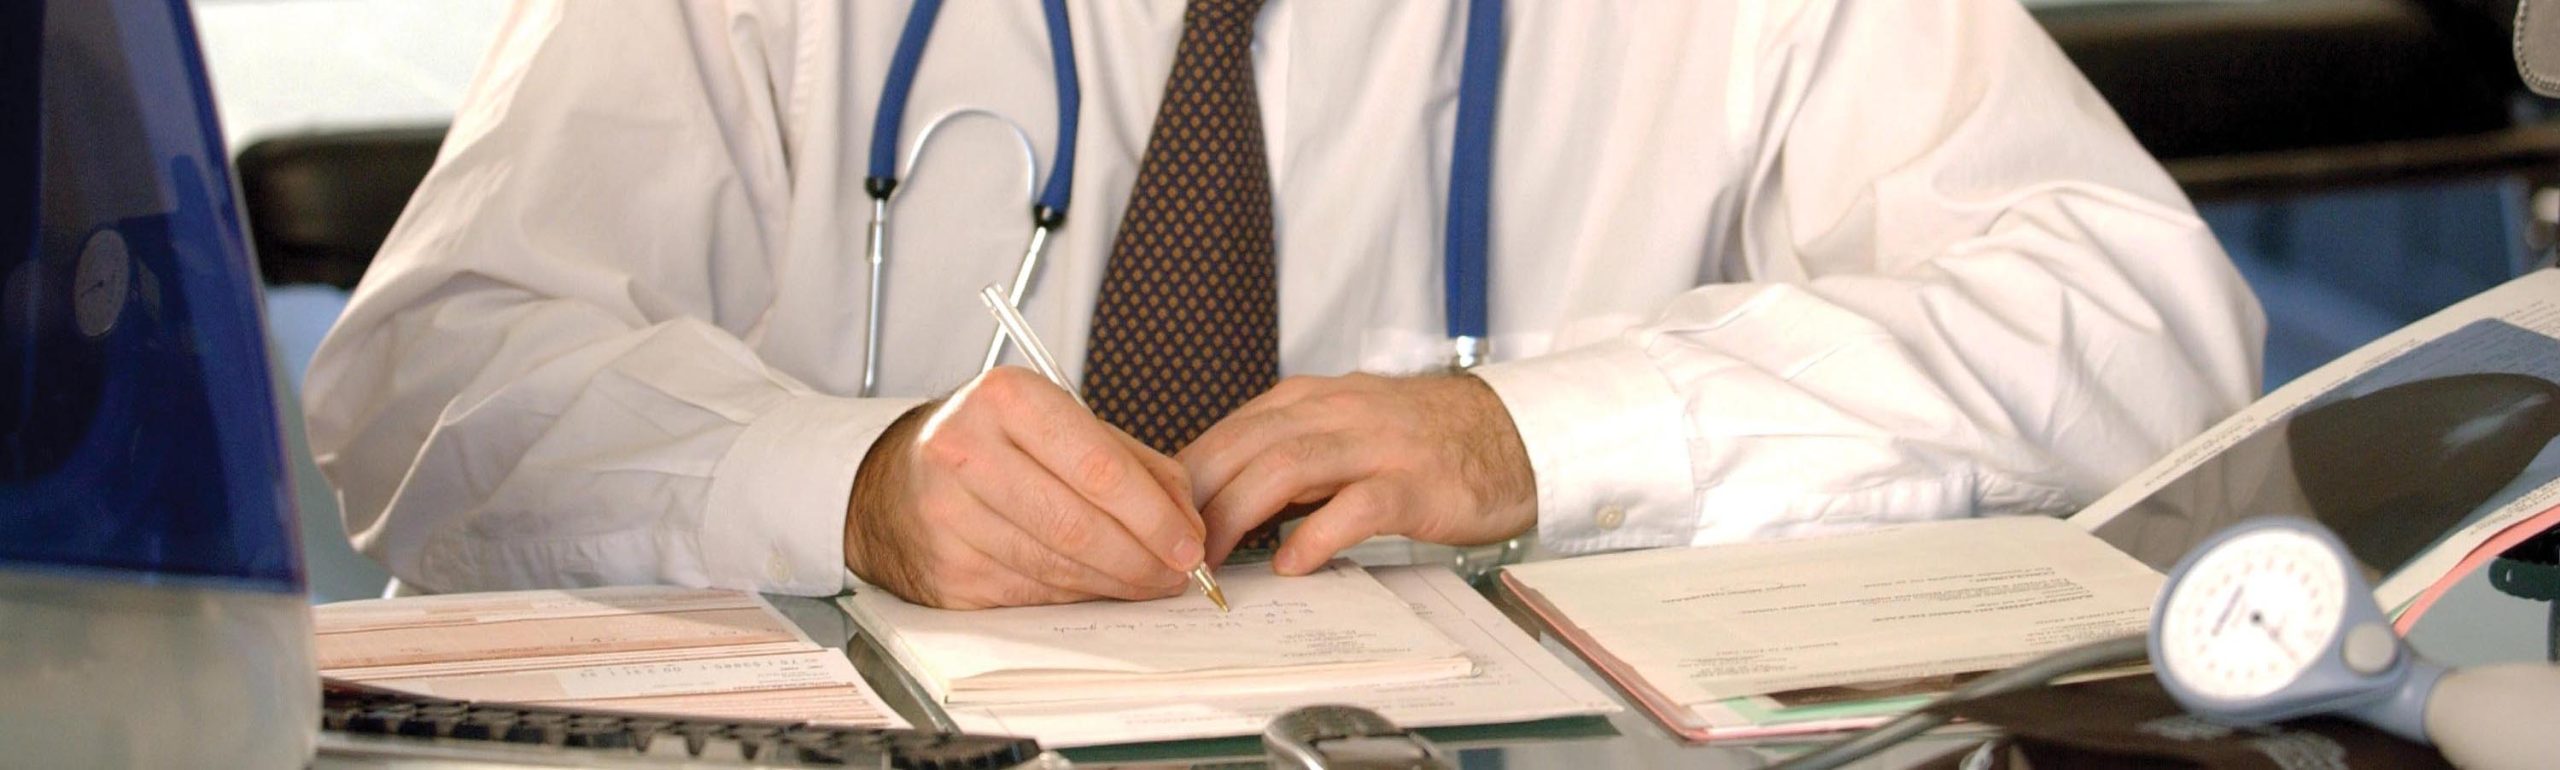 Κρήτη: Προκήρυξη 10 νέων μόνιμων θέσεων γιατρών στο ΕΣΥ